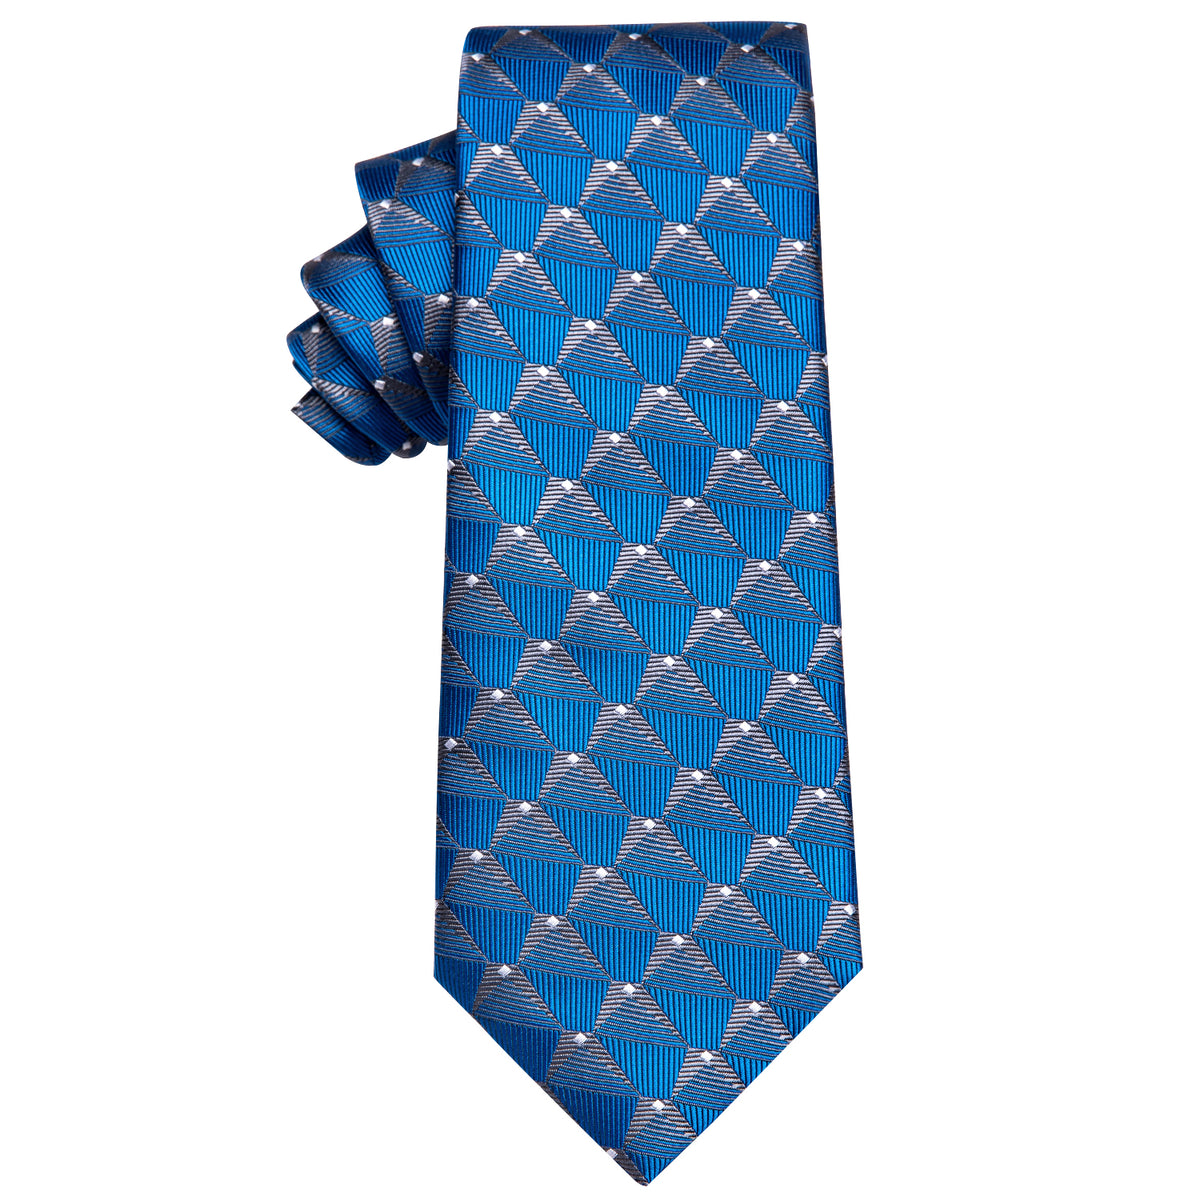 Blue Silver Geometry Novelty Silk Necktie with Golden Tie Clip